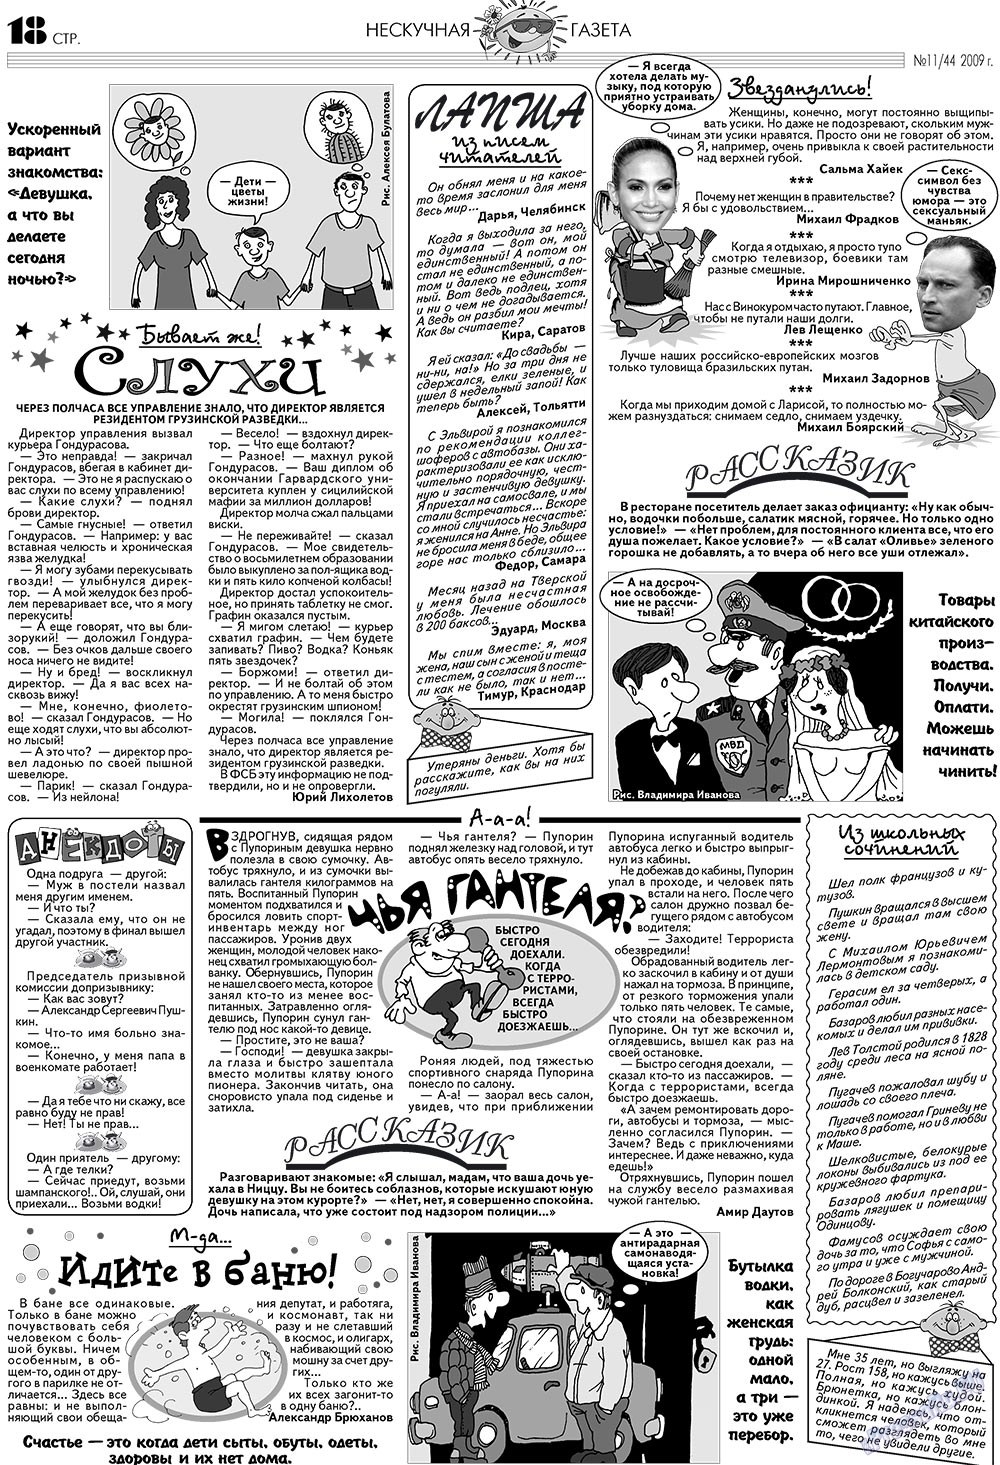 Нескучная газета (журнал). 2009 год, номер 11, стр. 14